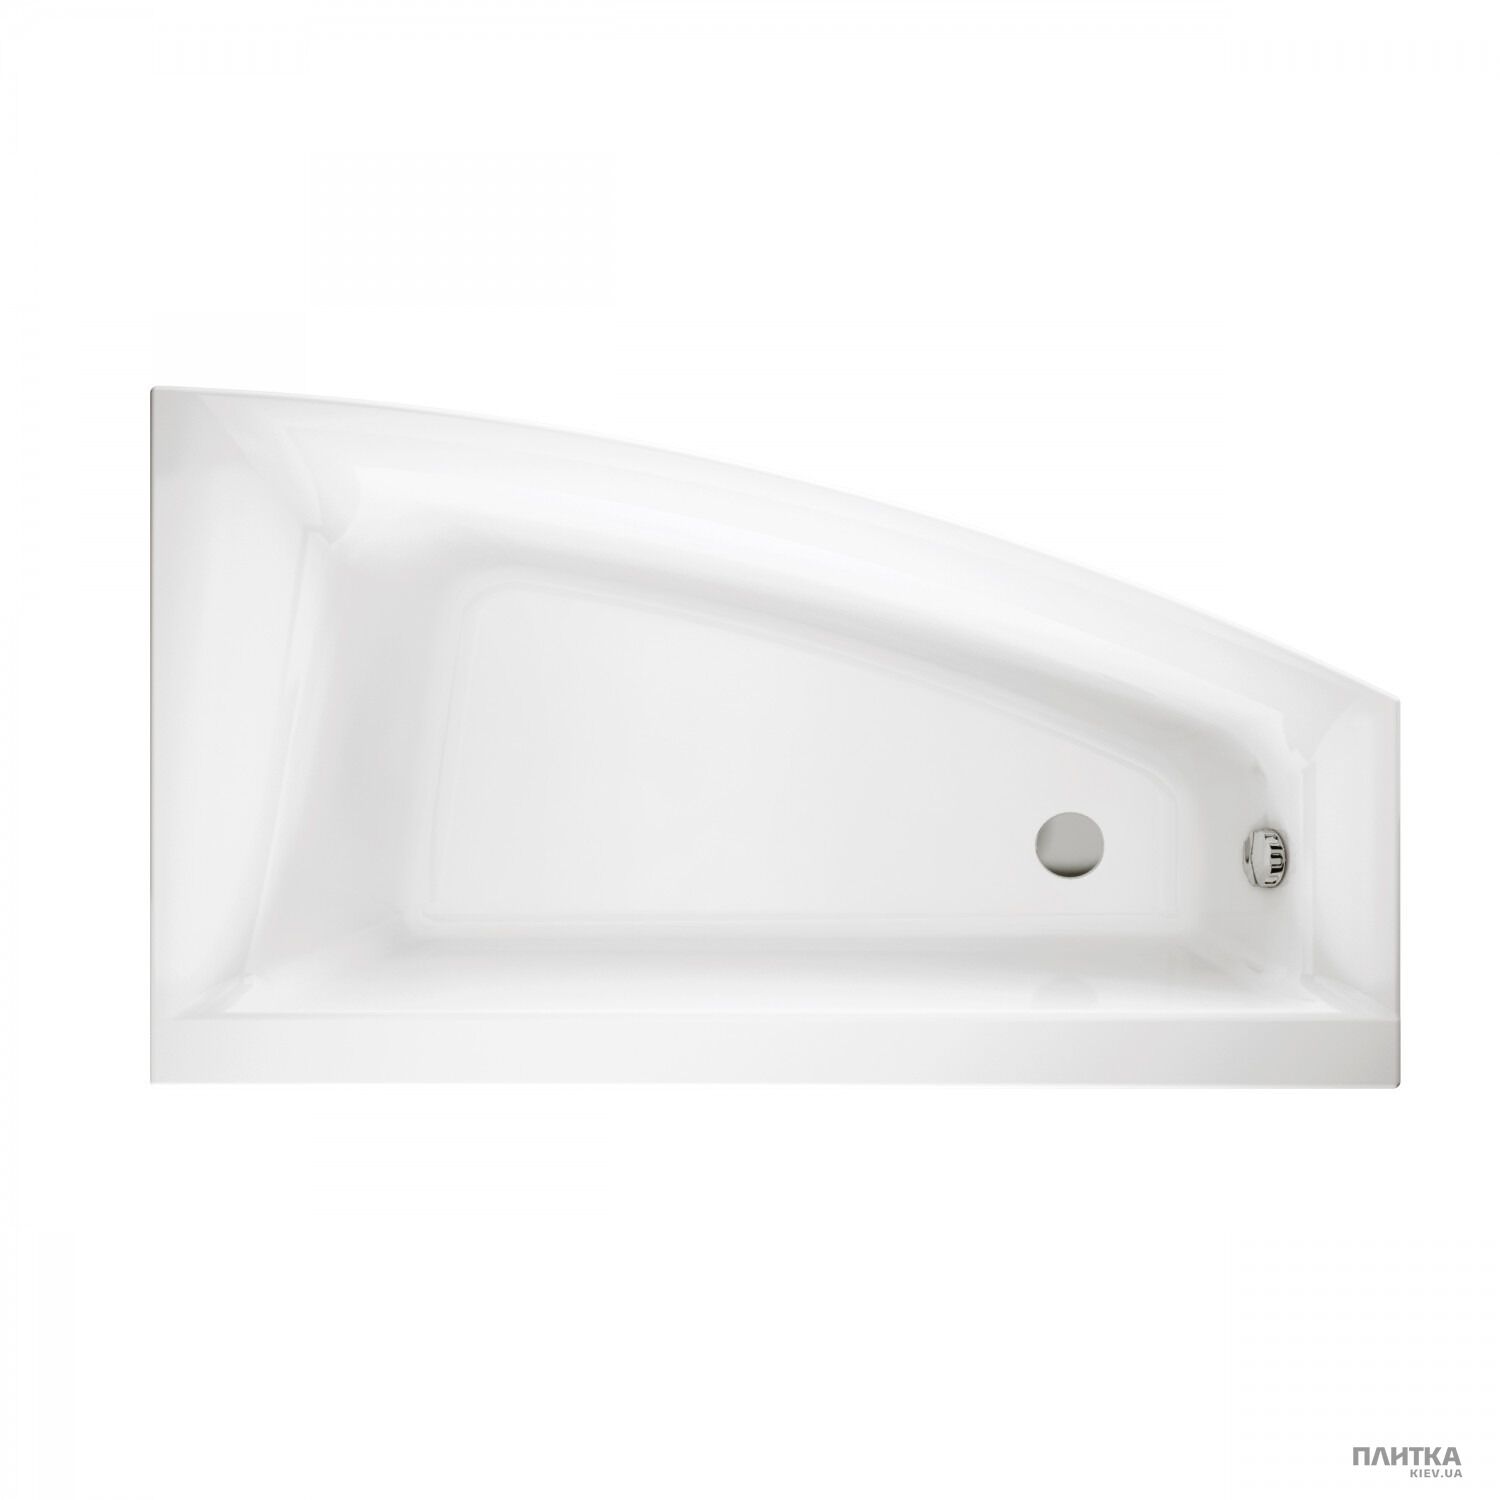 Акриловая ванна Cersanit Virgo max Ванна 160x90 правая с ножками COVER+ белый